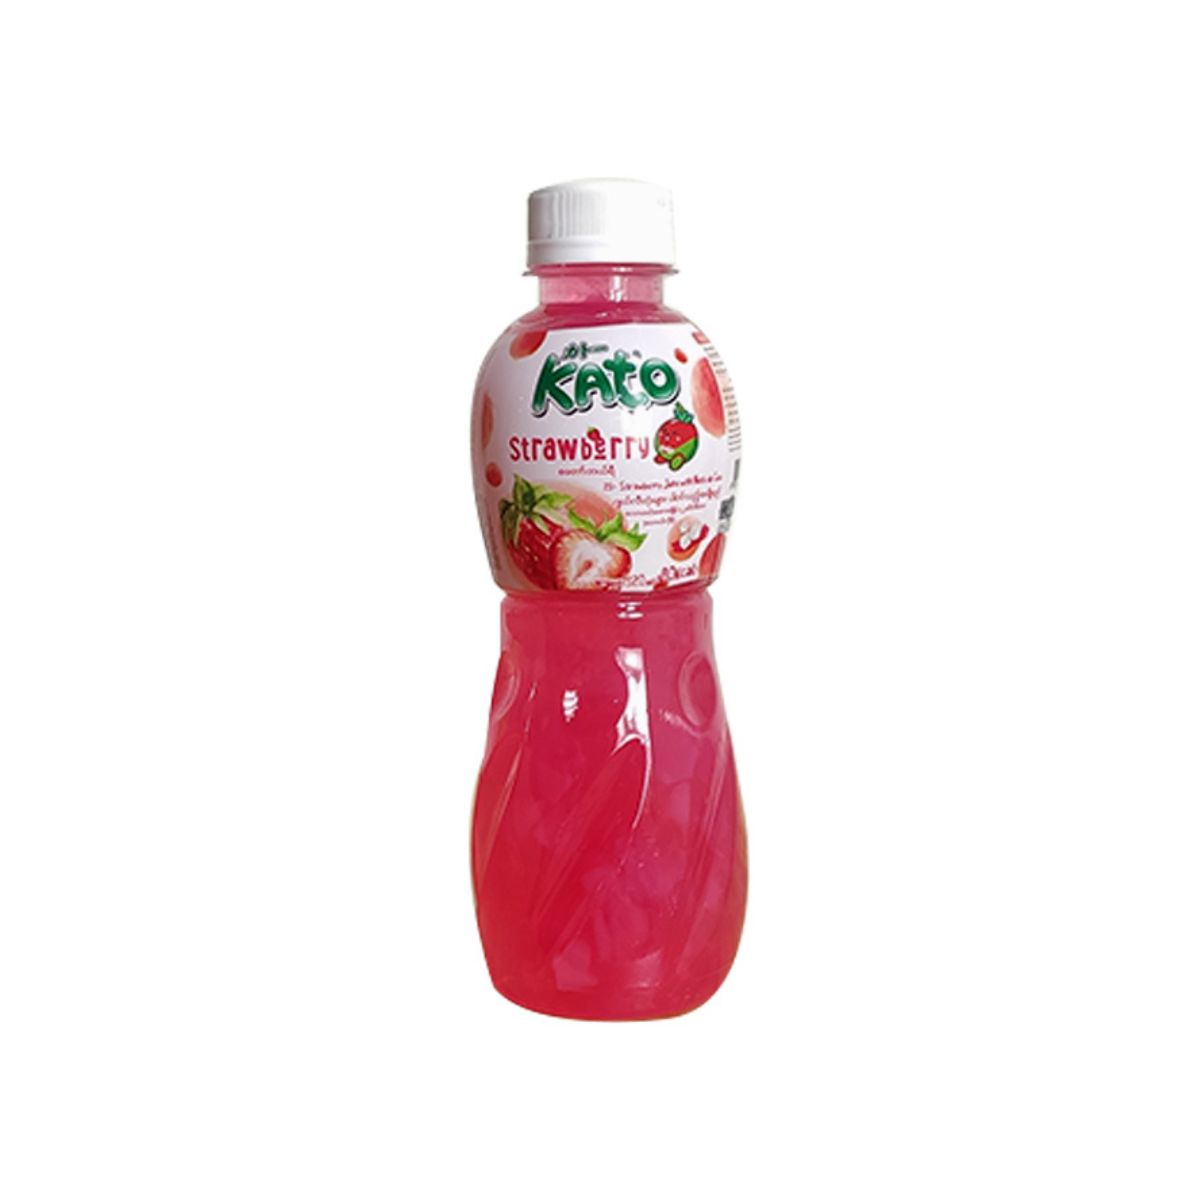 Kato Strawberry Juice with Nata de Coco - 320 ml